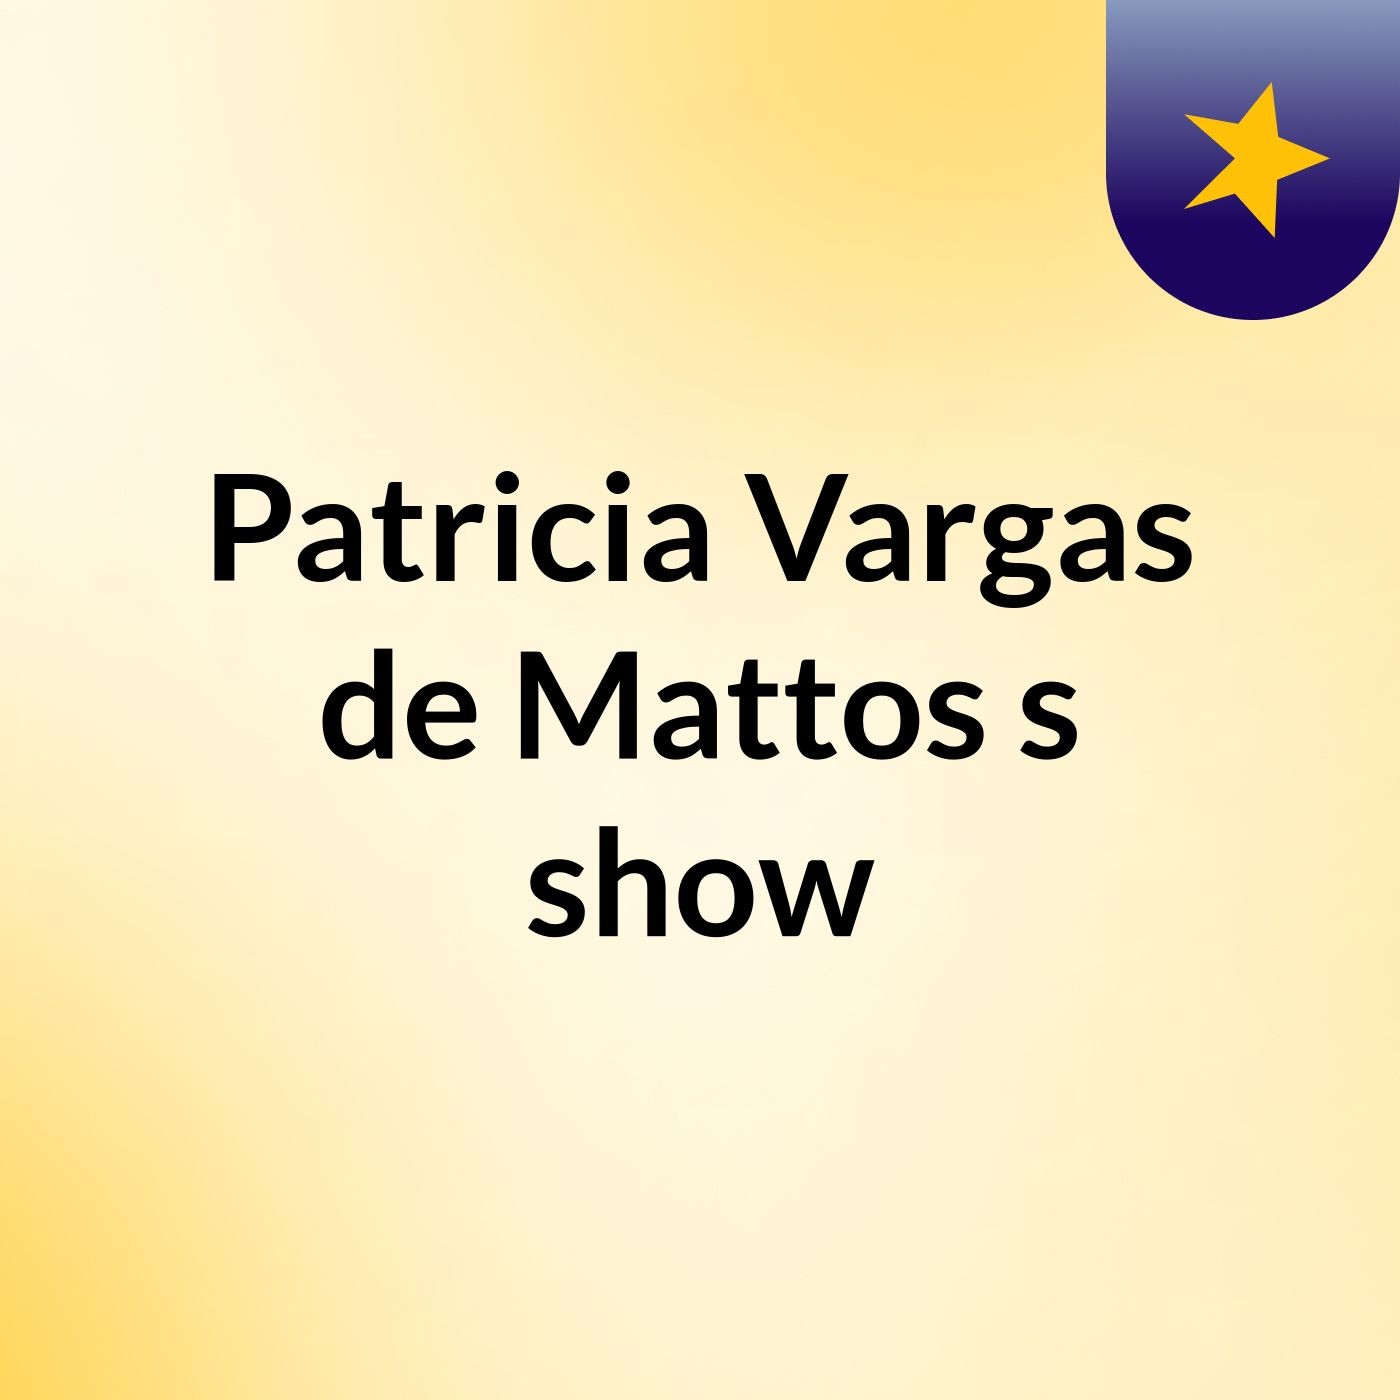 Episódio 13 - Patricia Vargas de Mattos's show